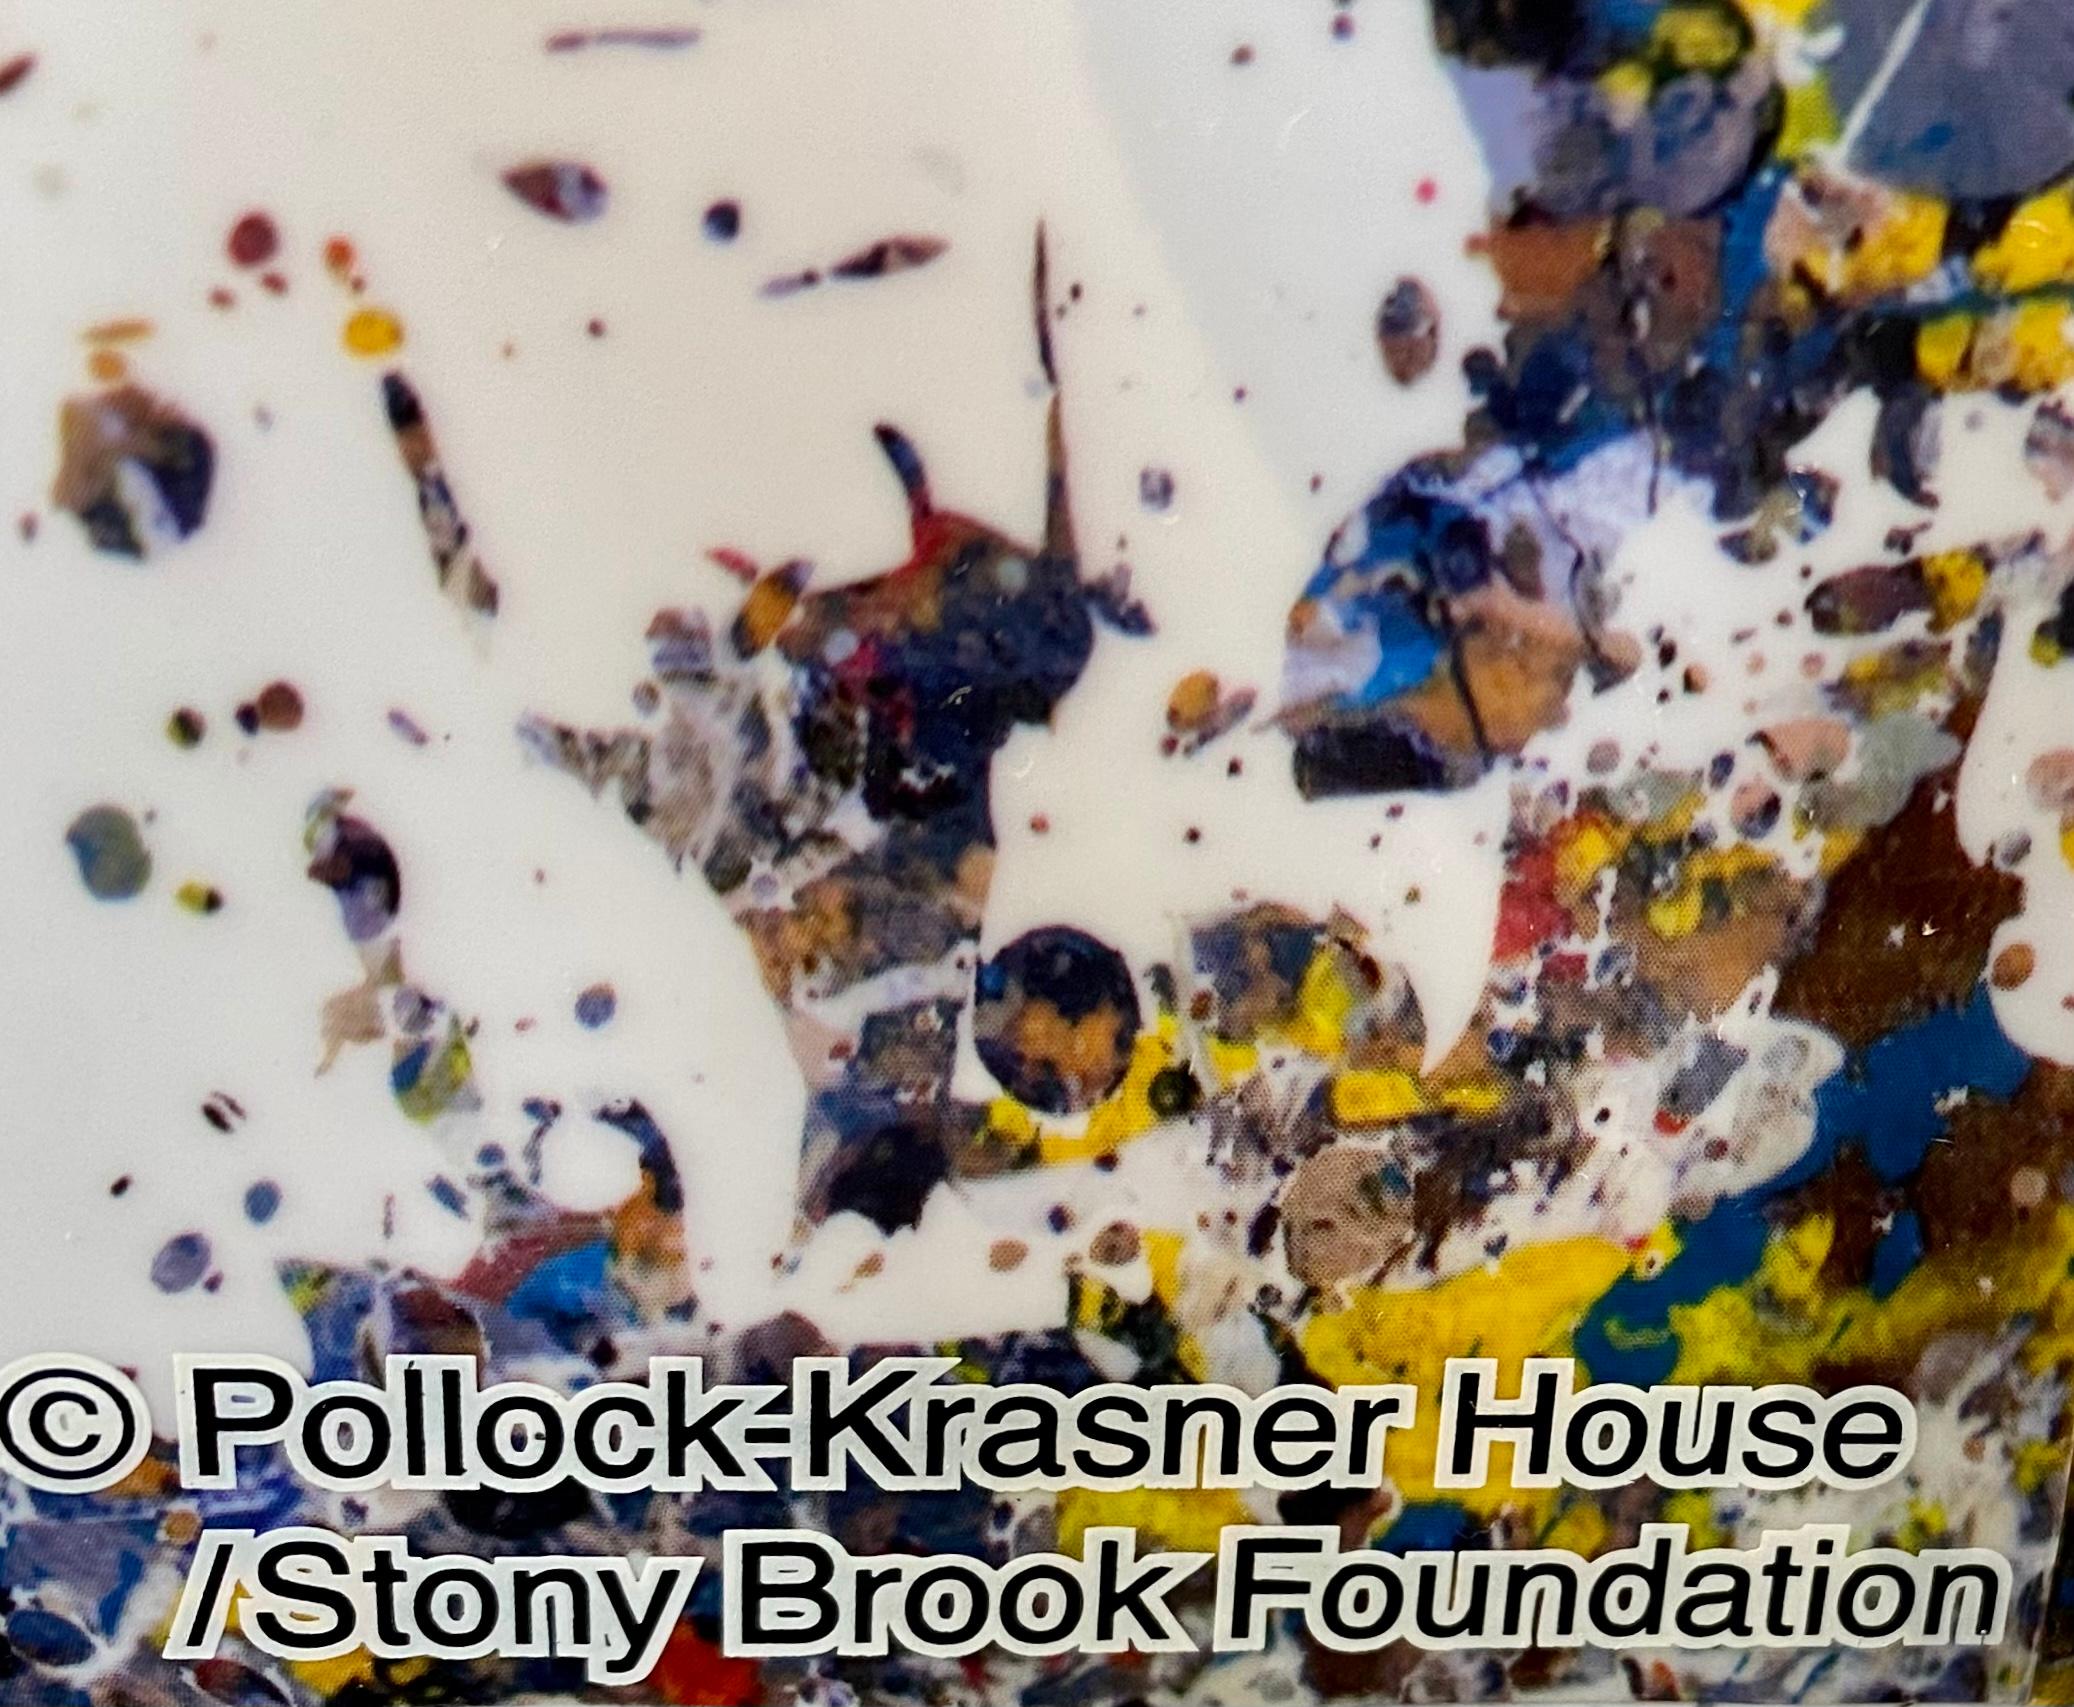 Jackson Pollock 1000% Bearbrick Figurative Sculpture : 
Une statue de Jackson Pollock en Bearbrick de belle taille (27 pouces de haut) et de grande collection, éclaboussée de la tête aux pieds de la signature de Pollock. Elle comprend une recréation